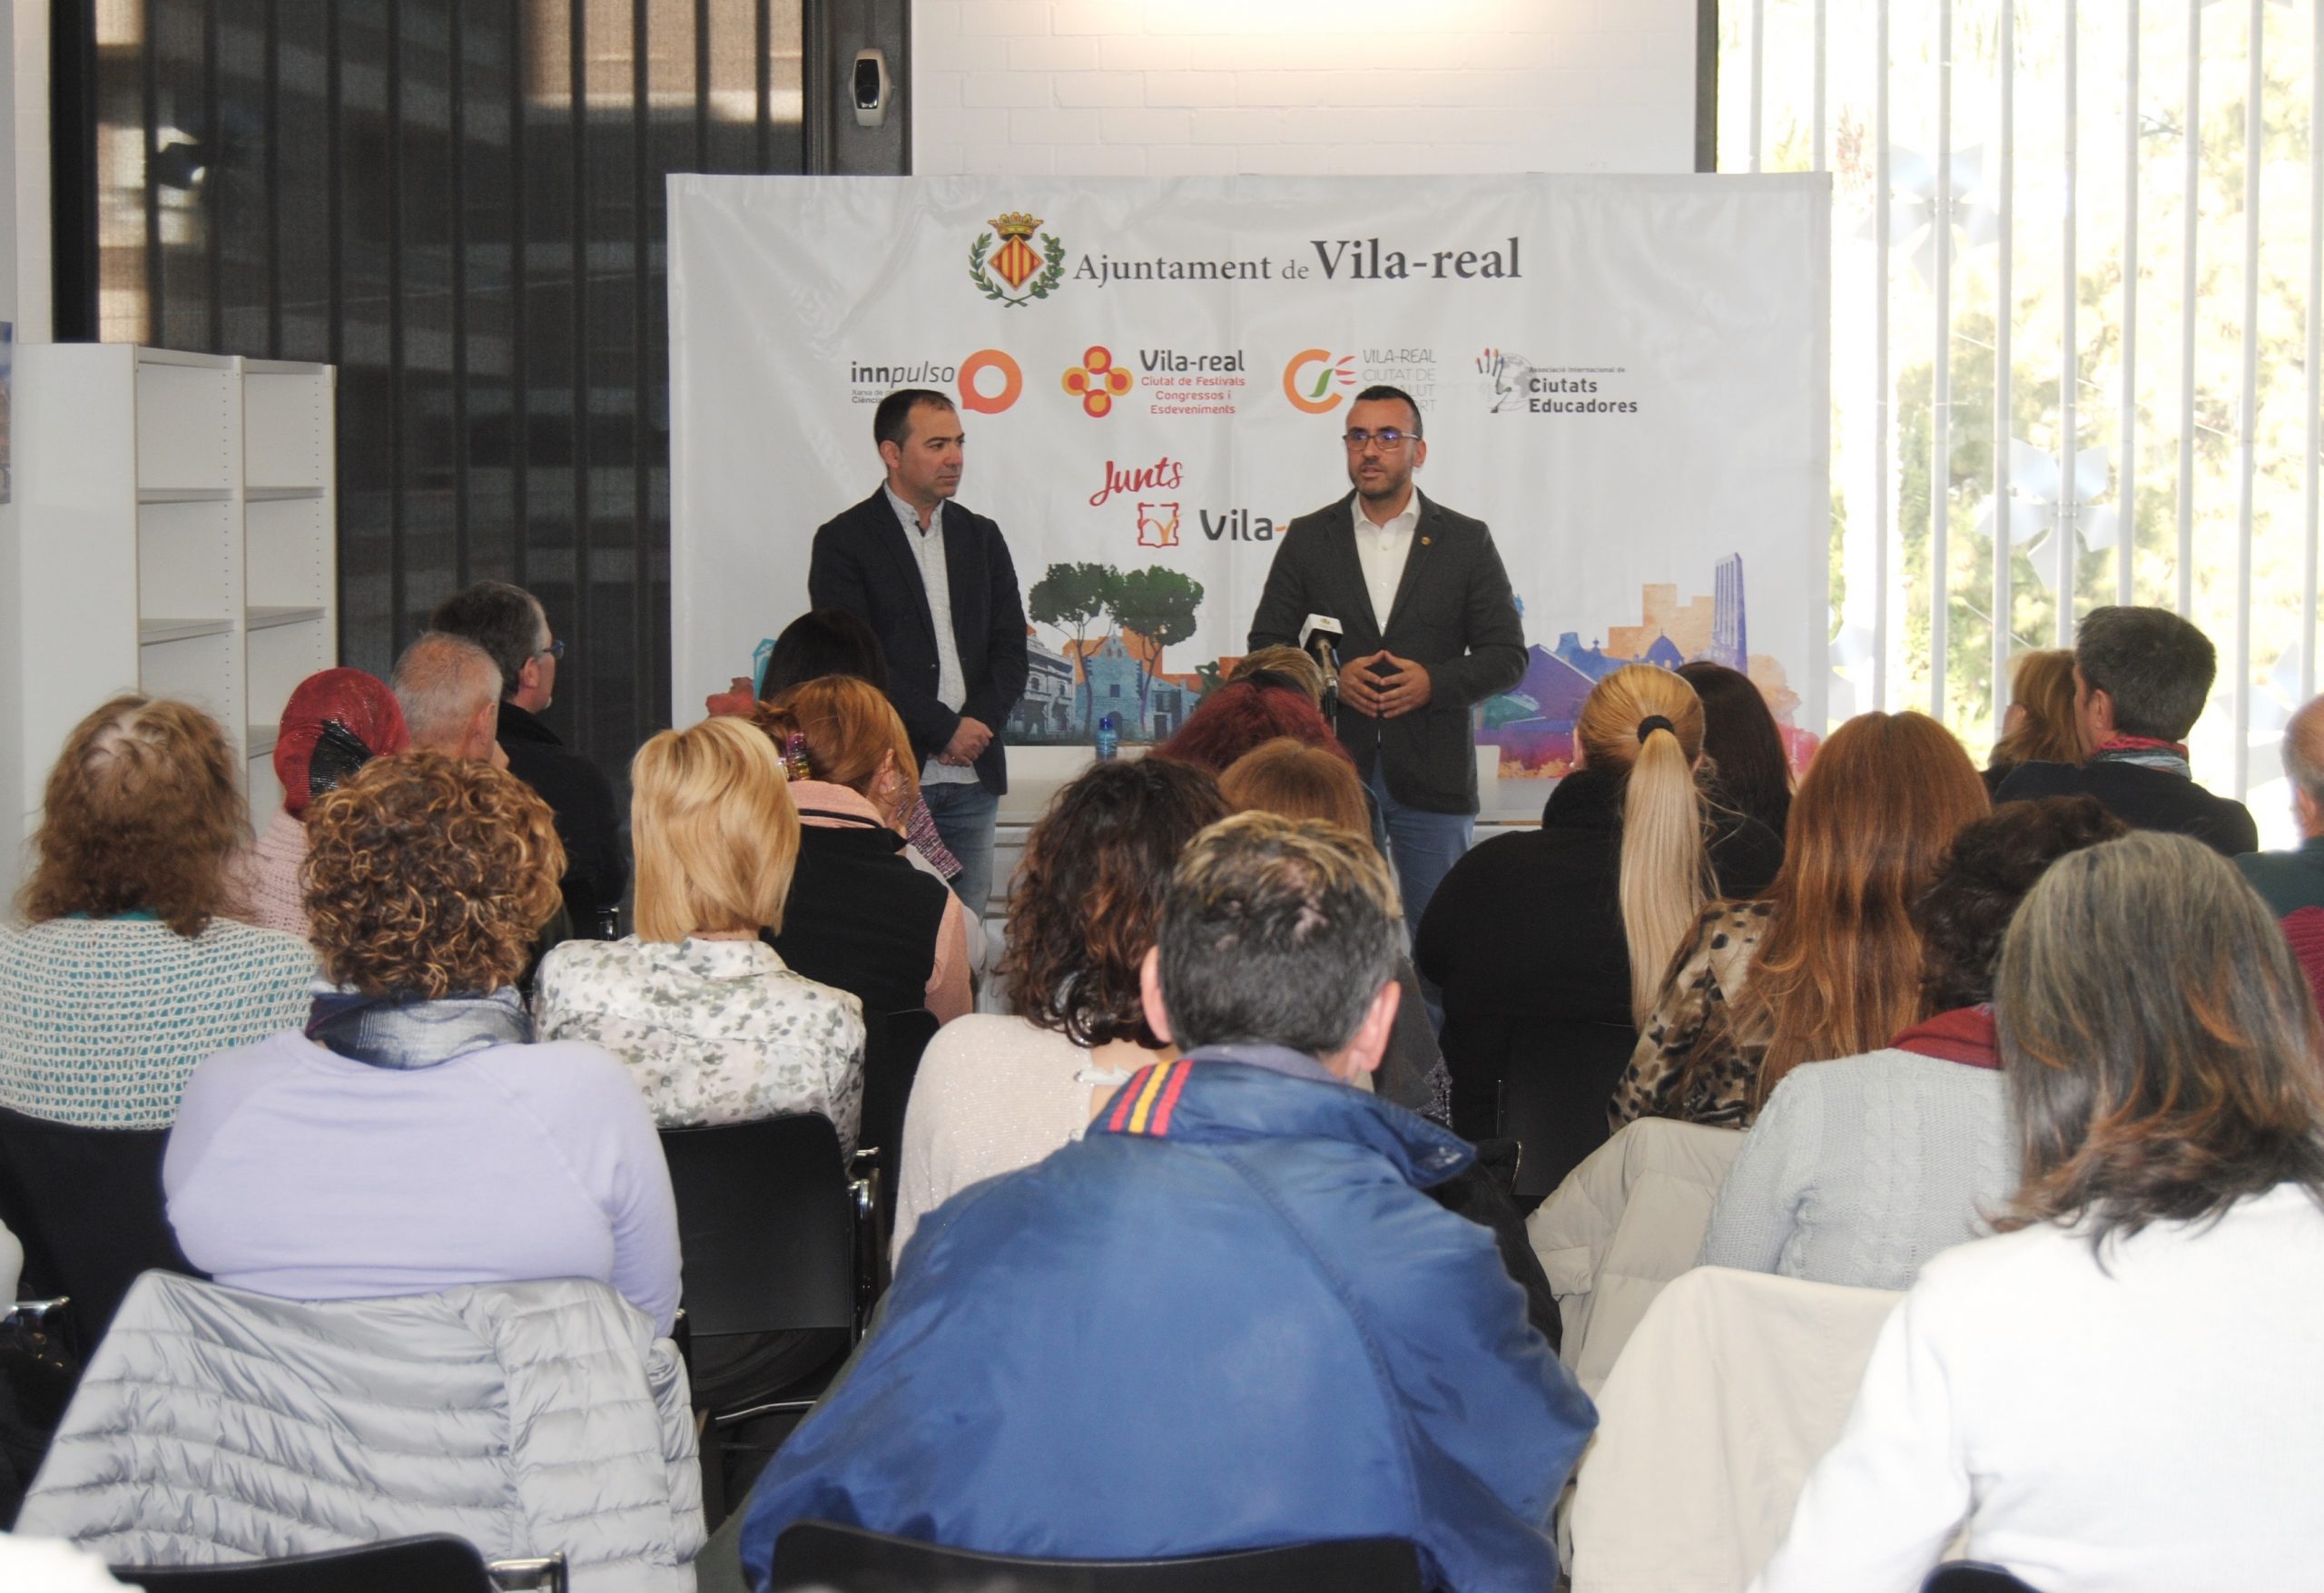 Vila-real da la acogida al nuevo taller de empleo y anuncia la apertura de una empresa de champiñones en la ciudad